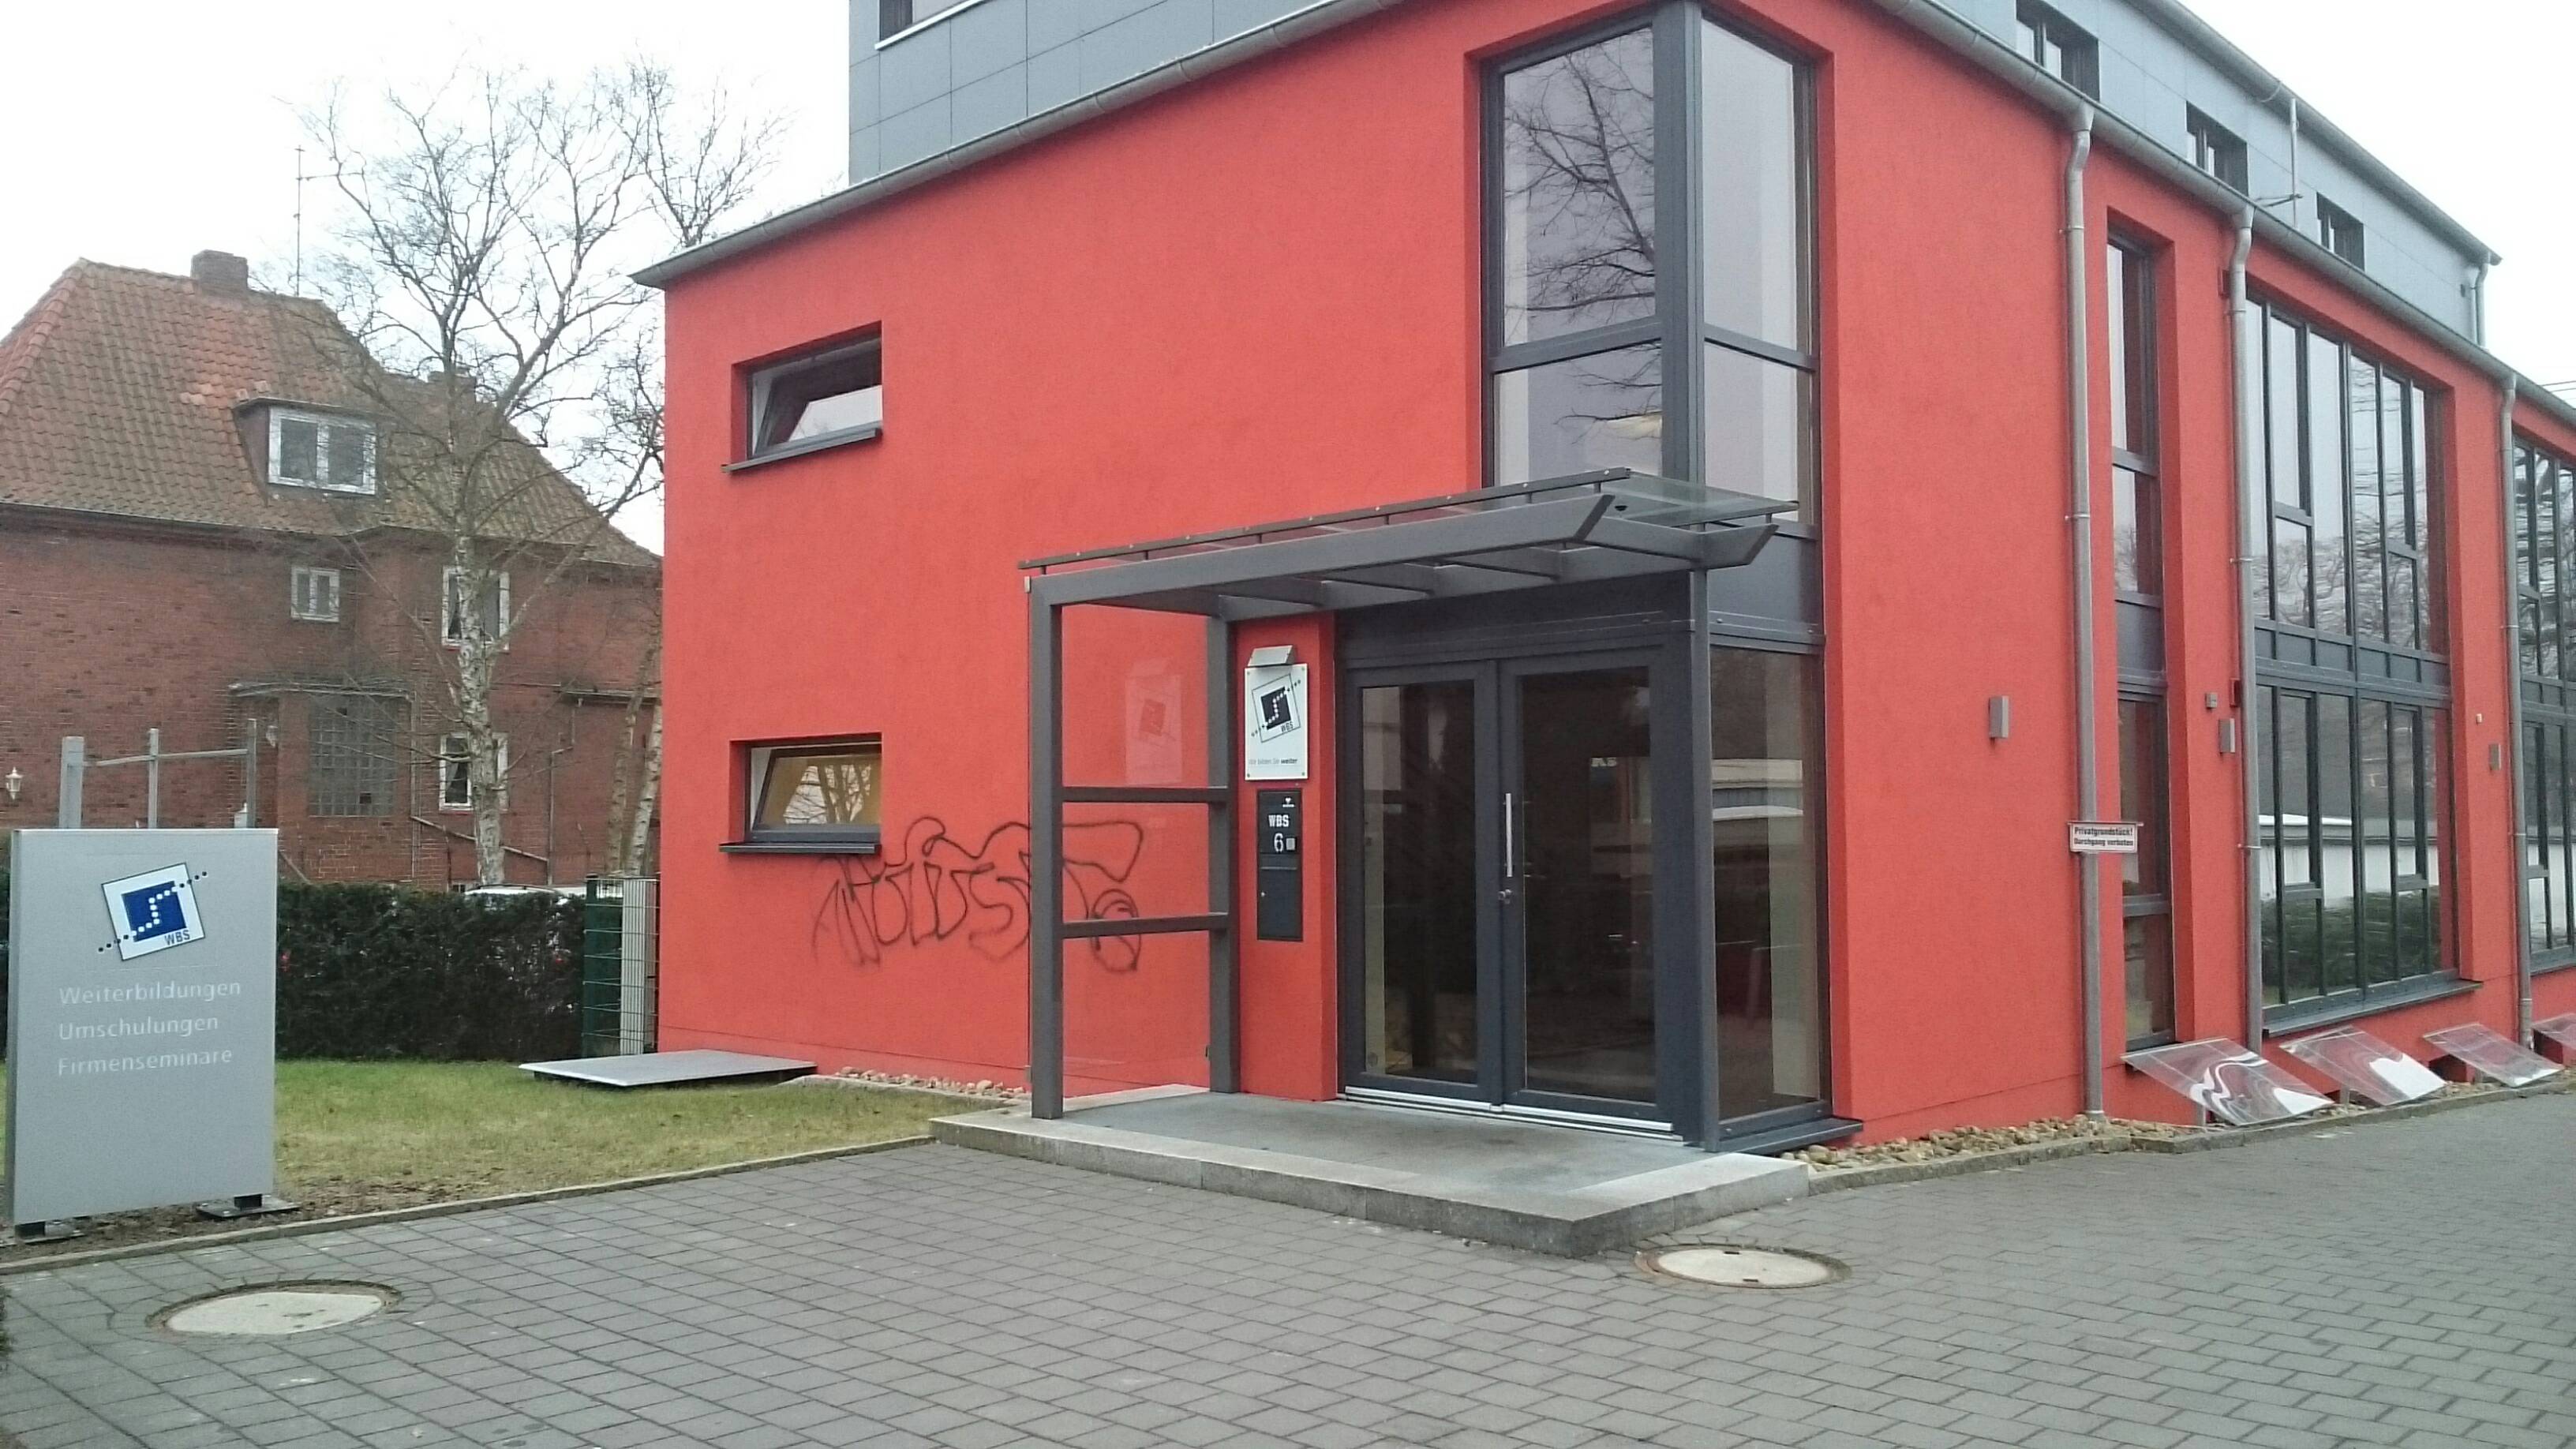 Bild 1 Raumausstattung Trage in Selmsdorf